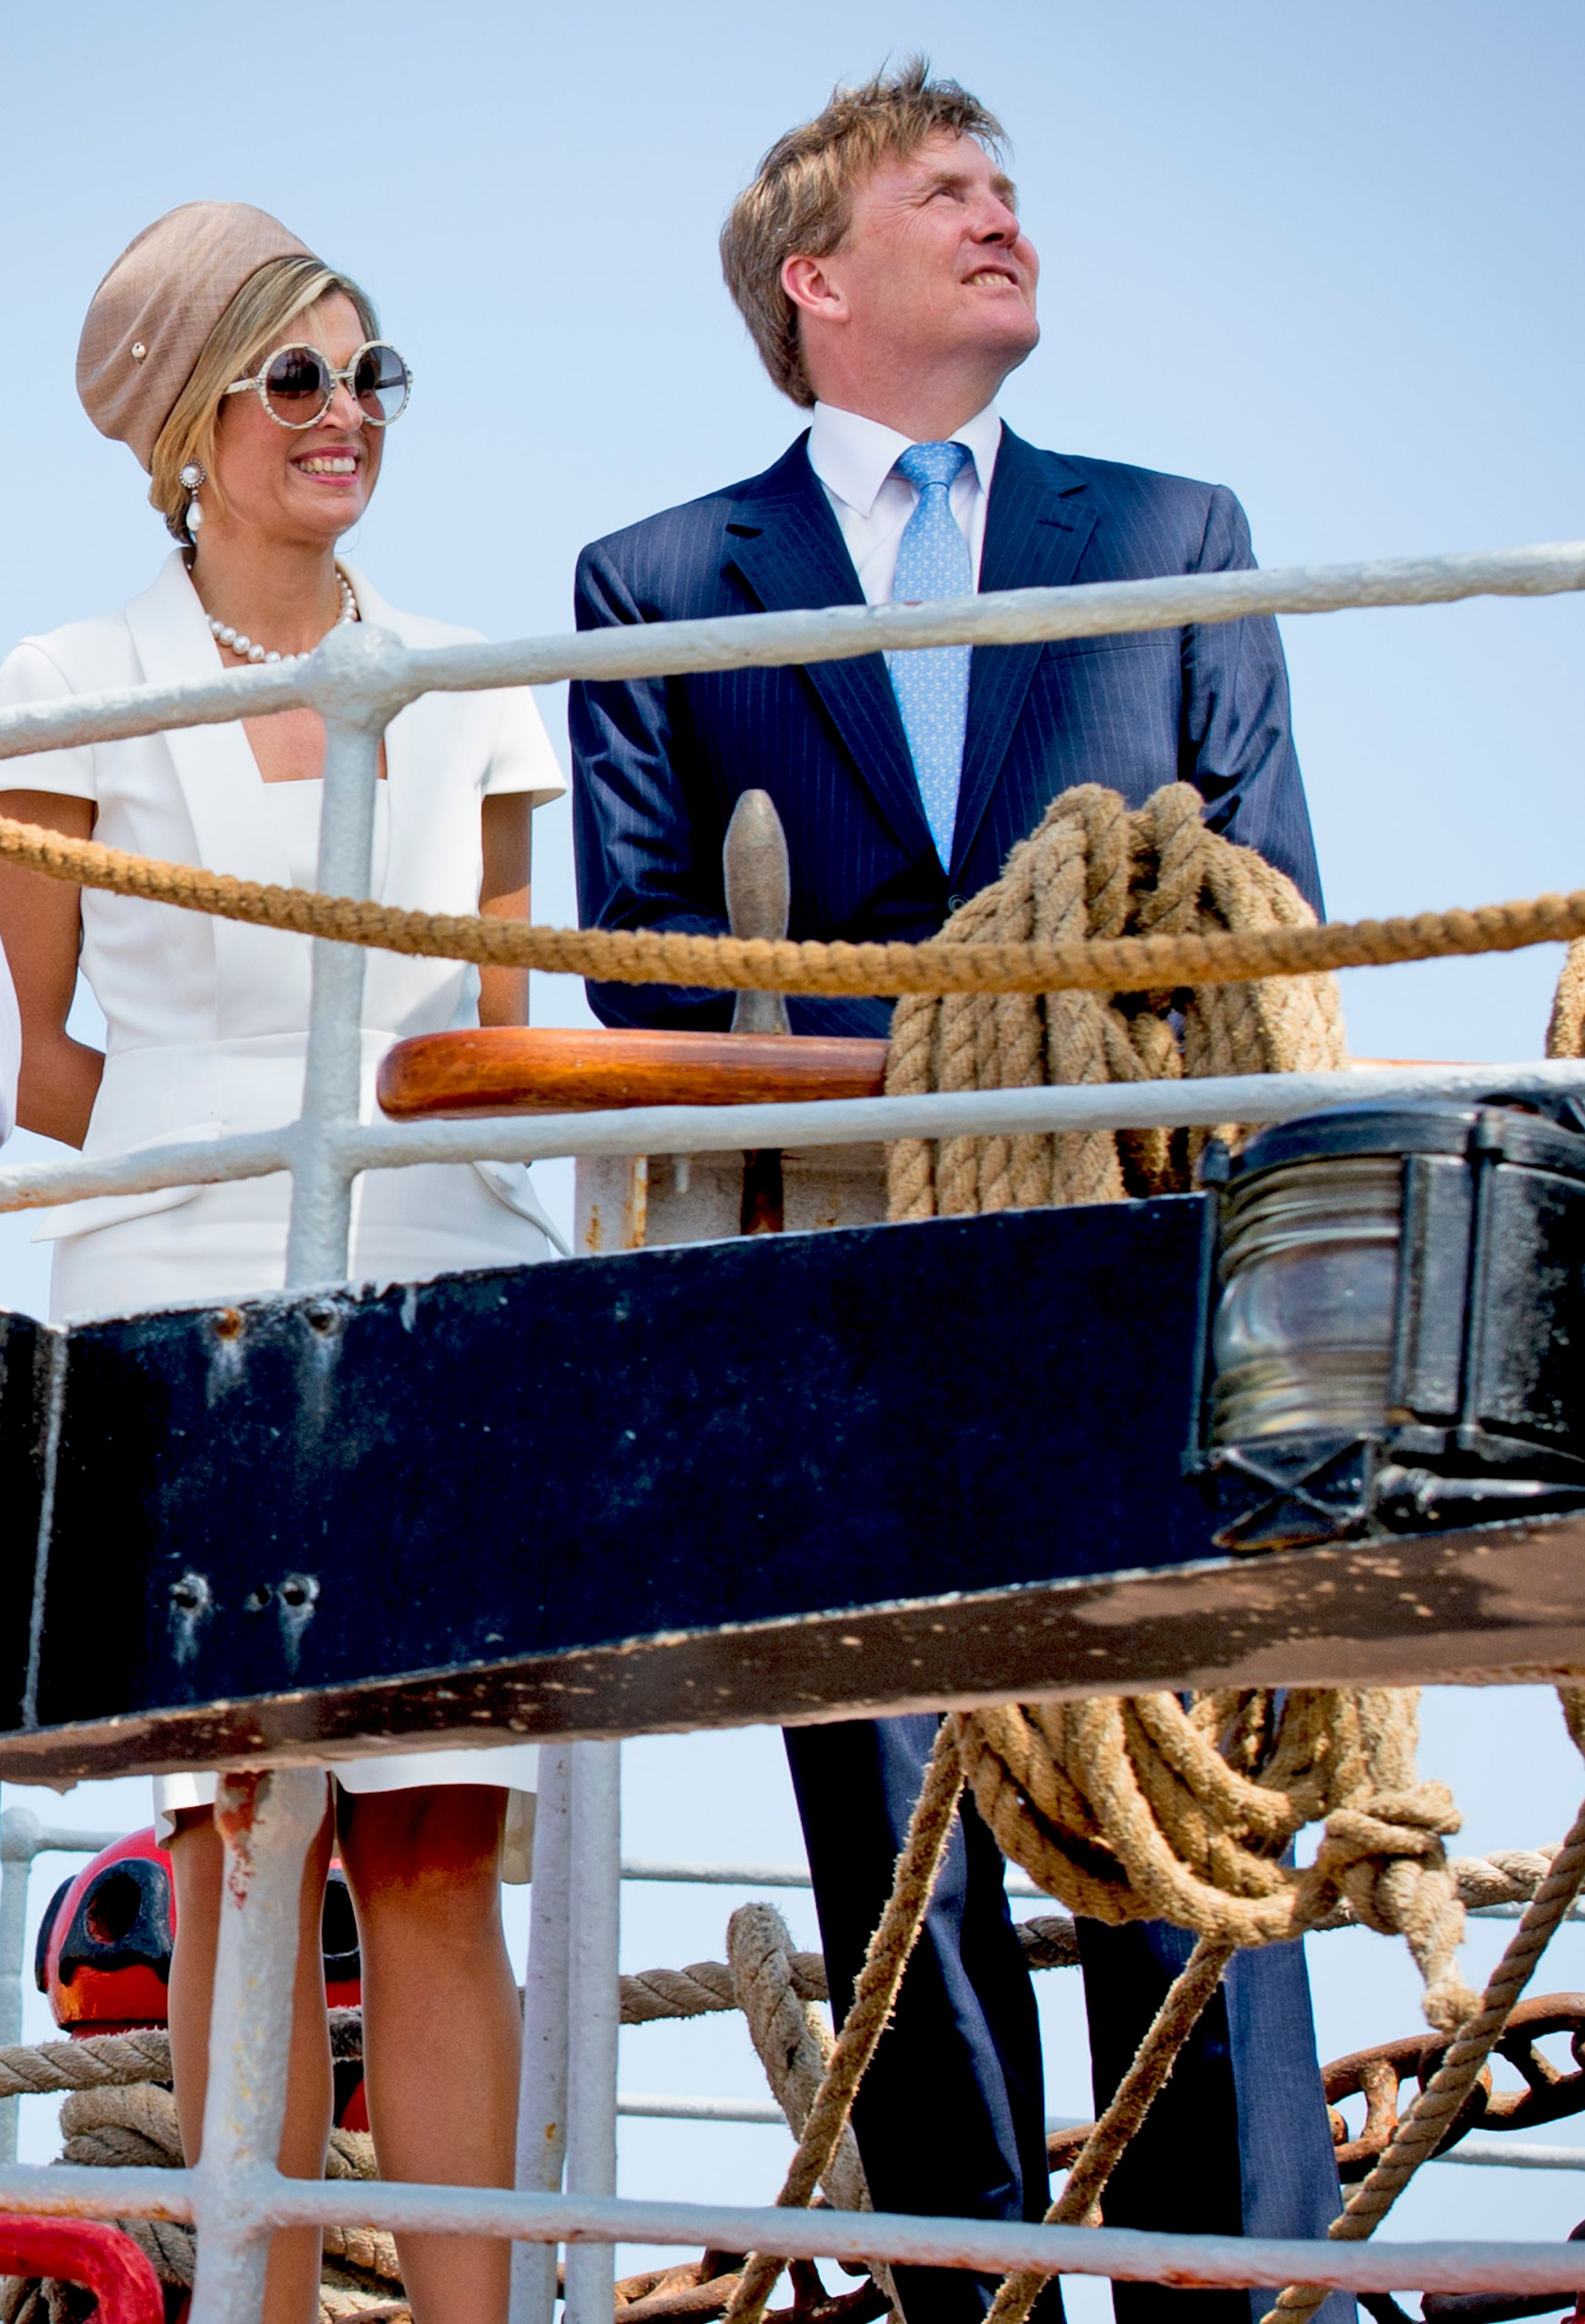 Koningin Máxima koos bij het bezoek aan Aruba voor dit mooie witte model van Tom Ford.